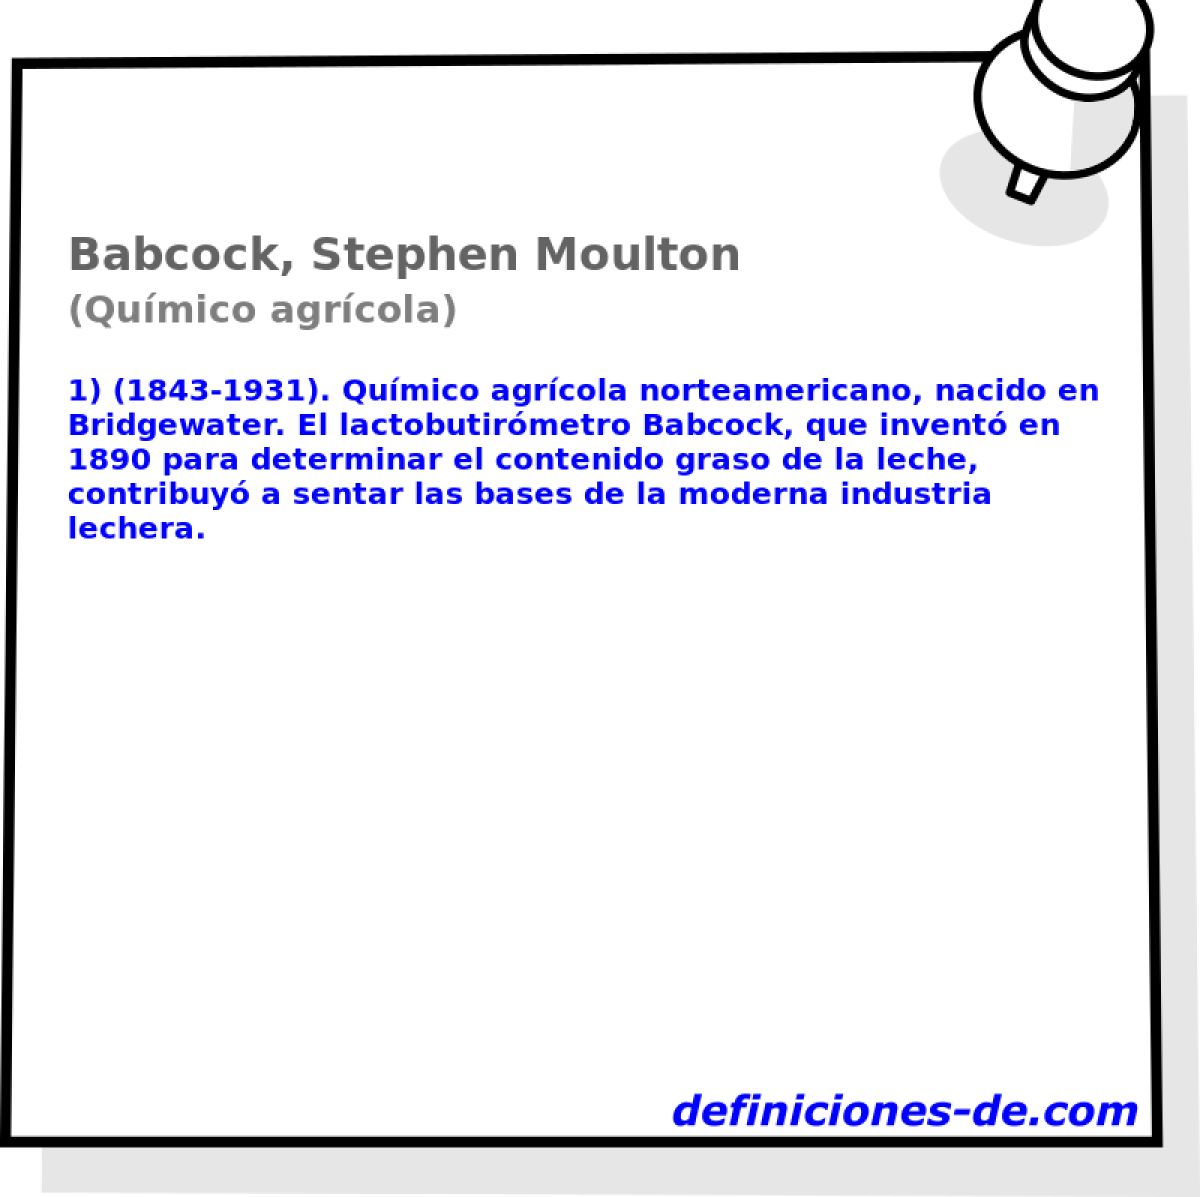 Babcock, Stephen Moulton (Qumico agrcola)